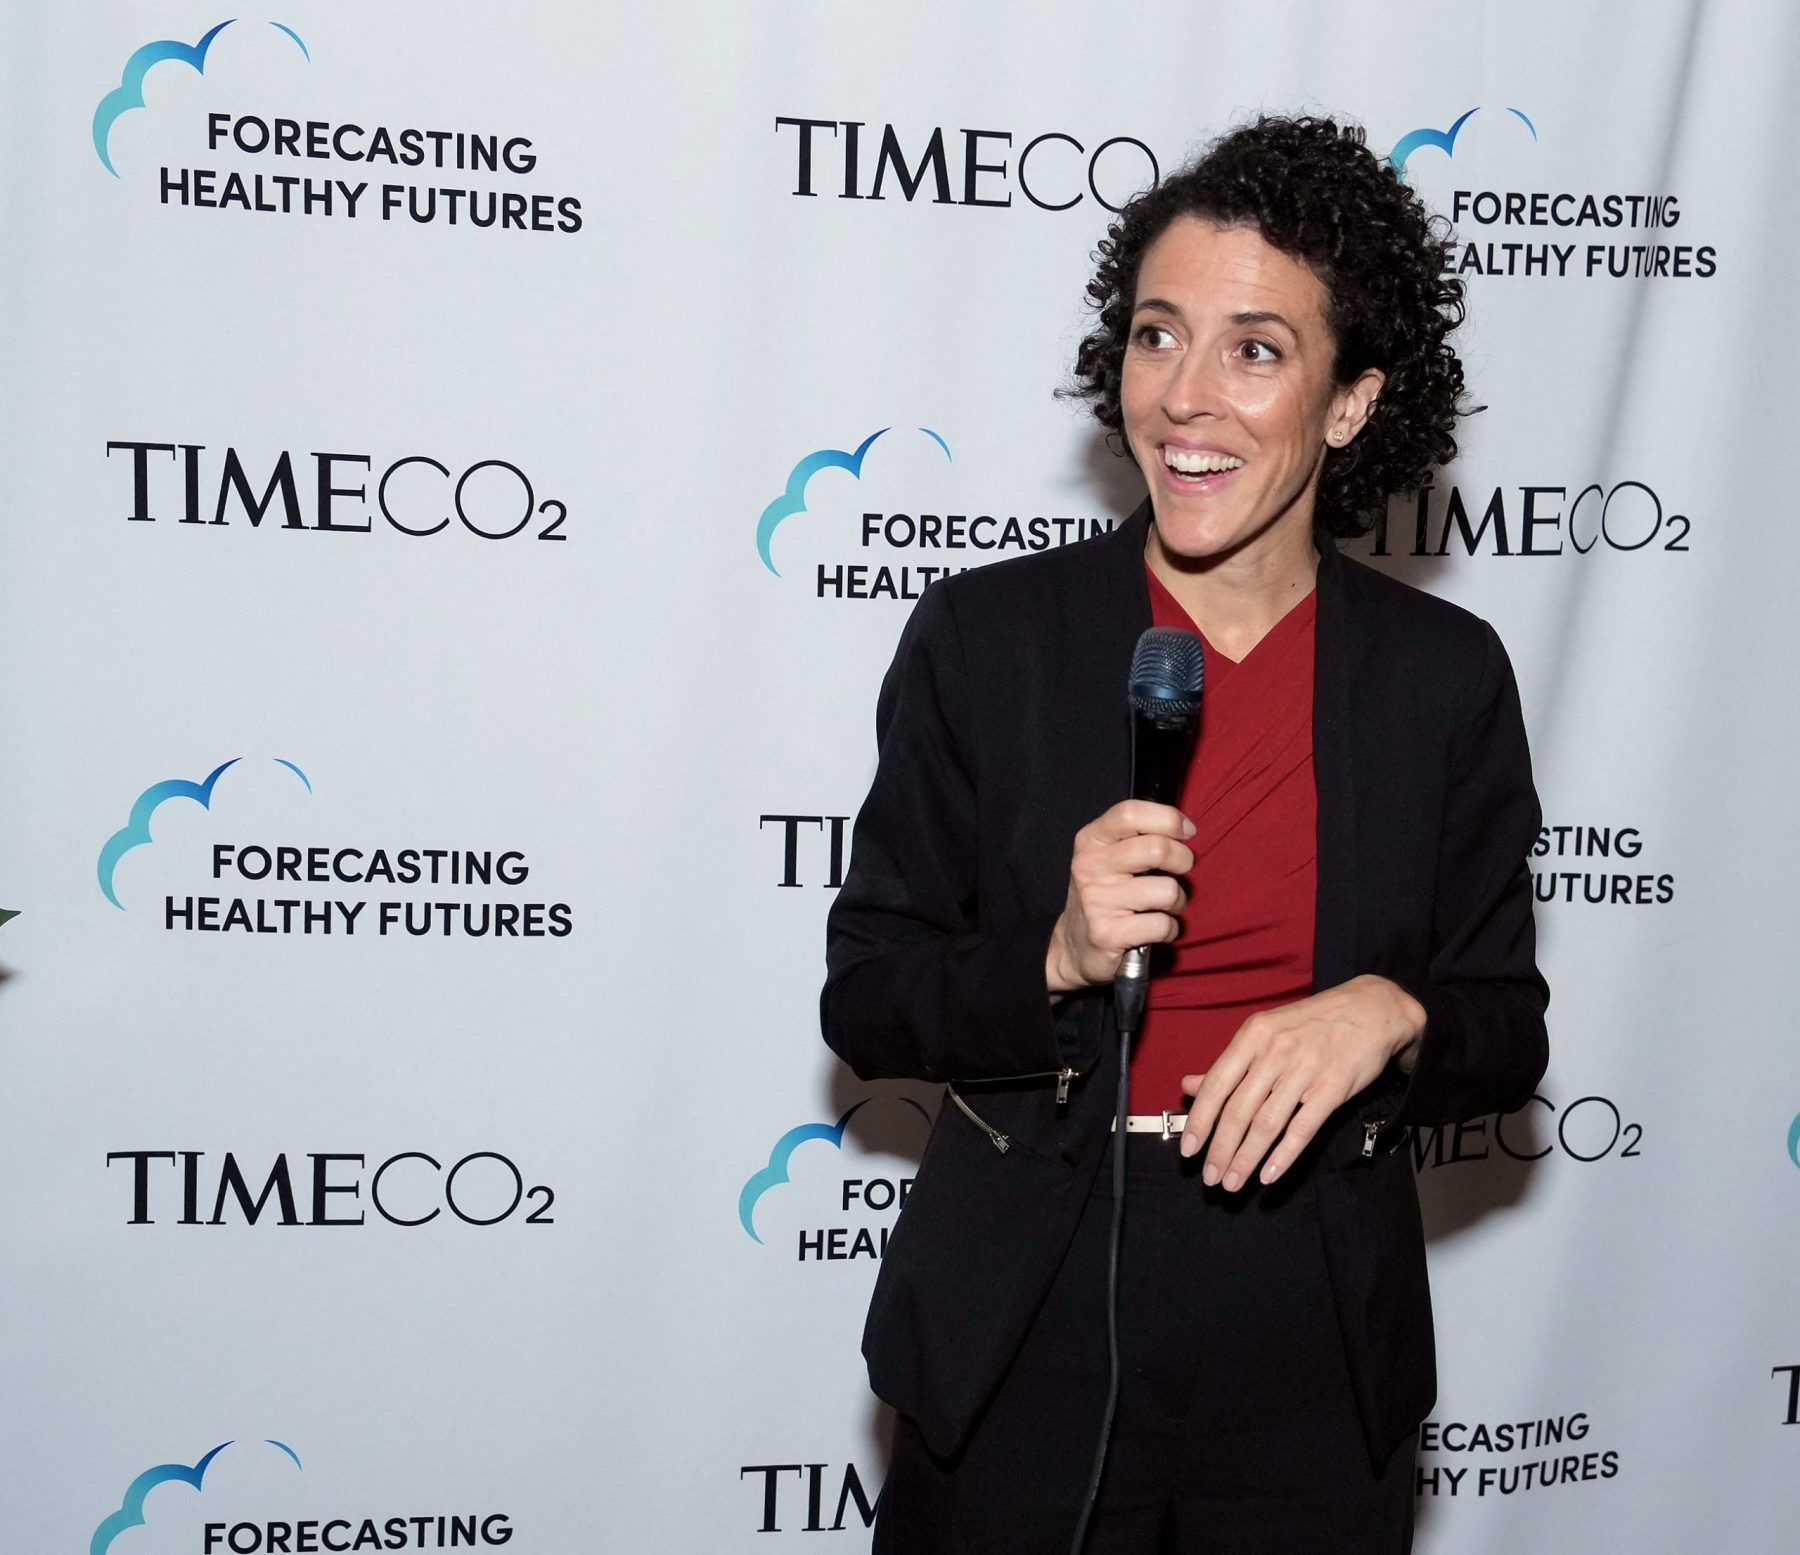 Marina Romanello na Semana do Clima, em Nova York: "Precisamos de ações robustas e significativas para a eliminação gradual dos combustíveis fósseis". Foto Bennett Raglin/Getty Images via AFP